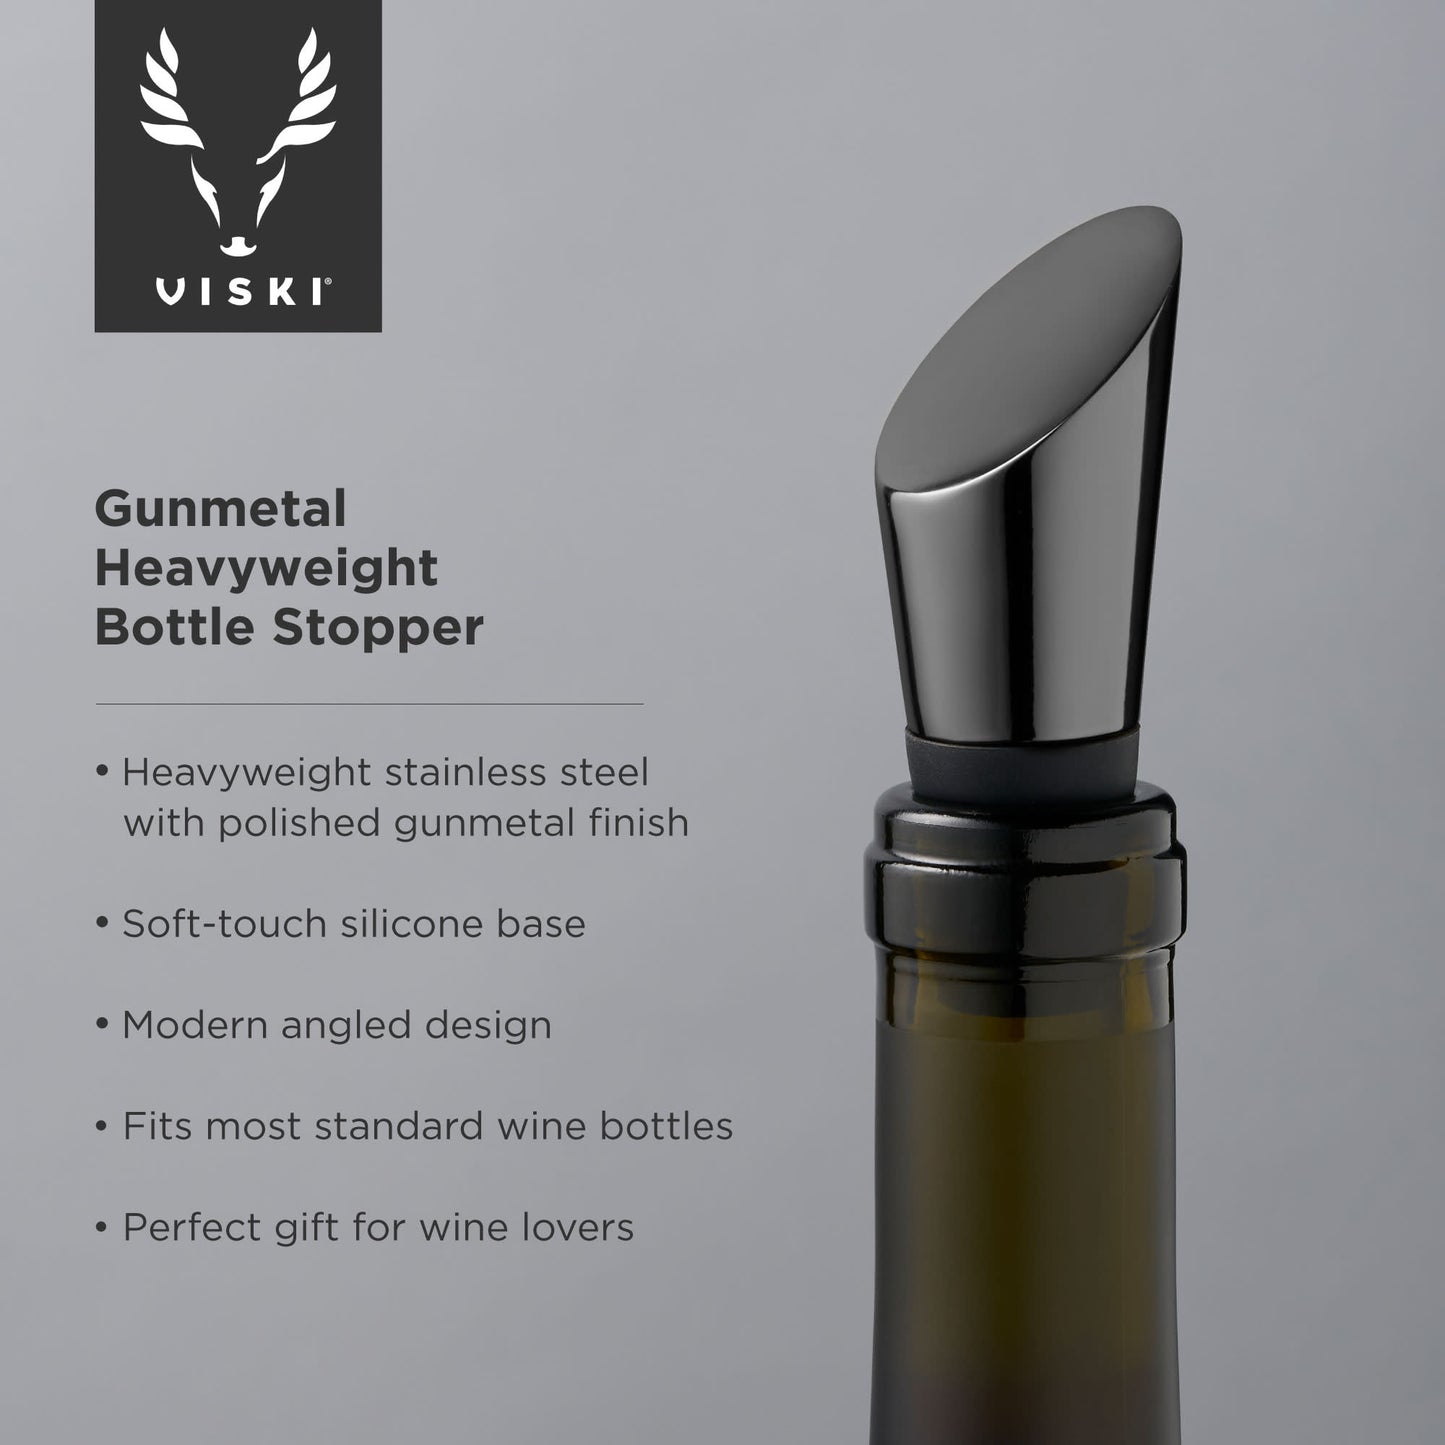 Gunmetal Heavyweight Bottle Stopper